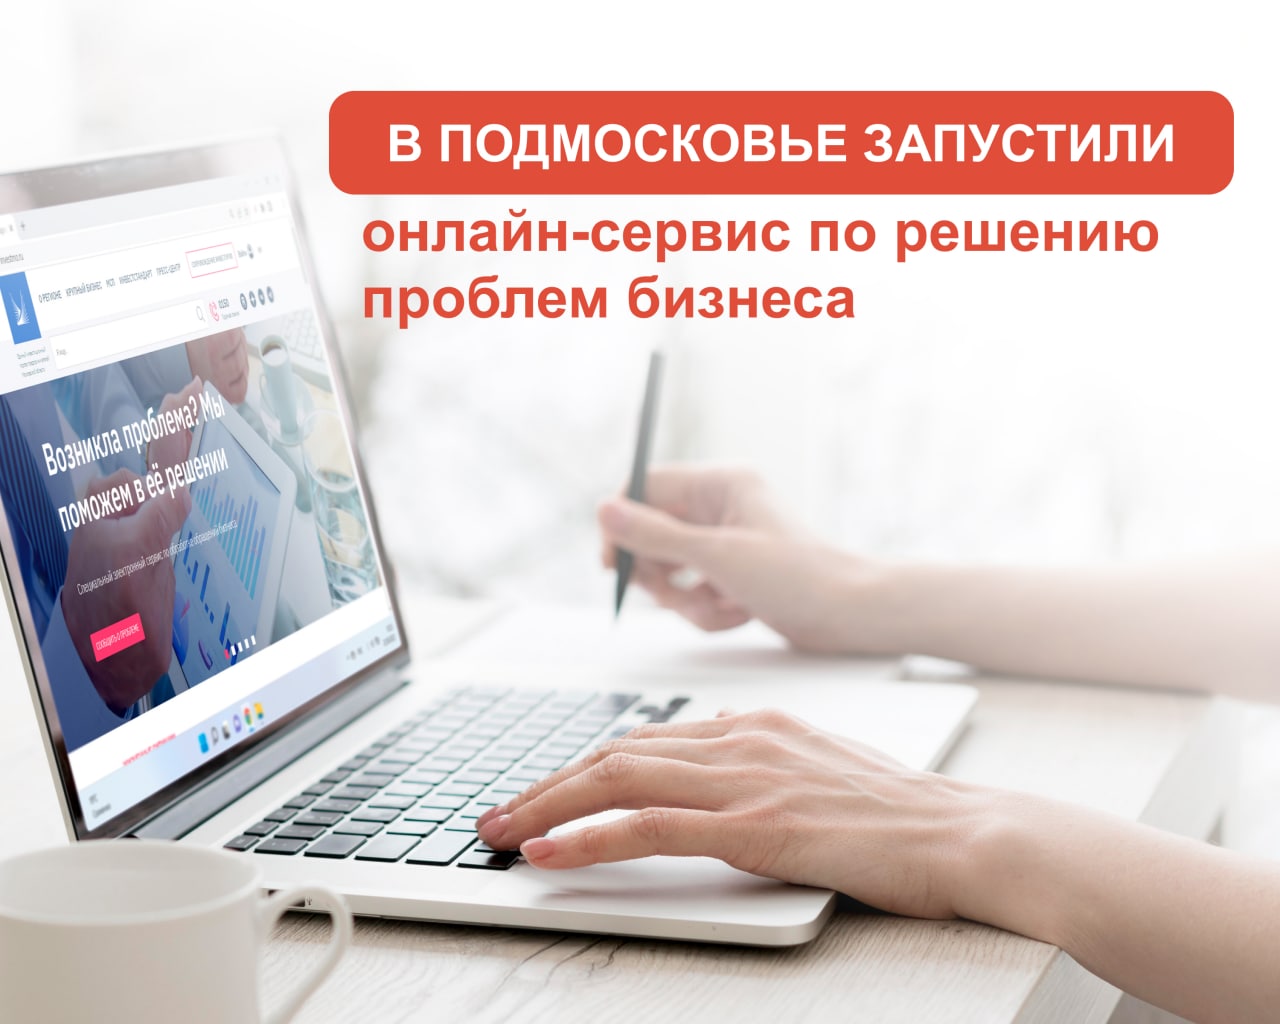 В Московской области запустили онлайн сервис по решению вопросов, касающихся ведения бизнеса в регионе.